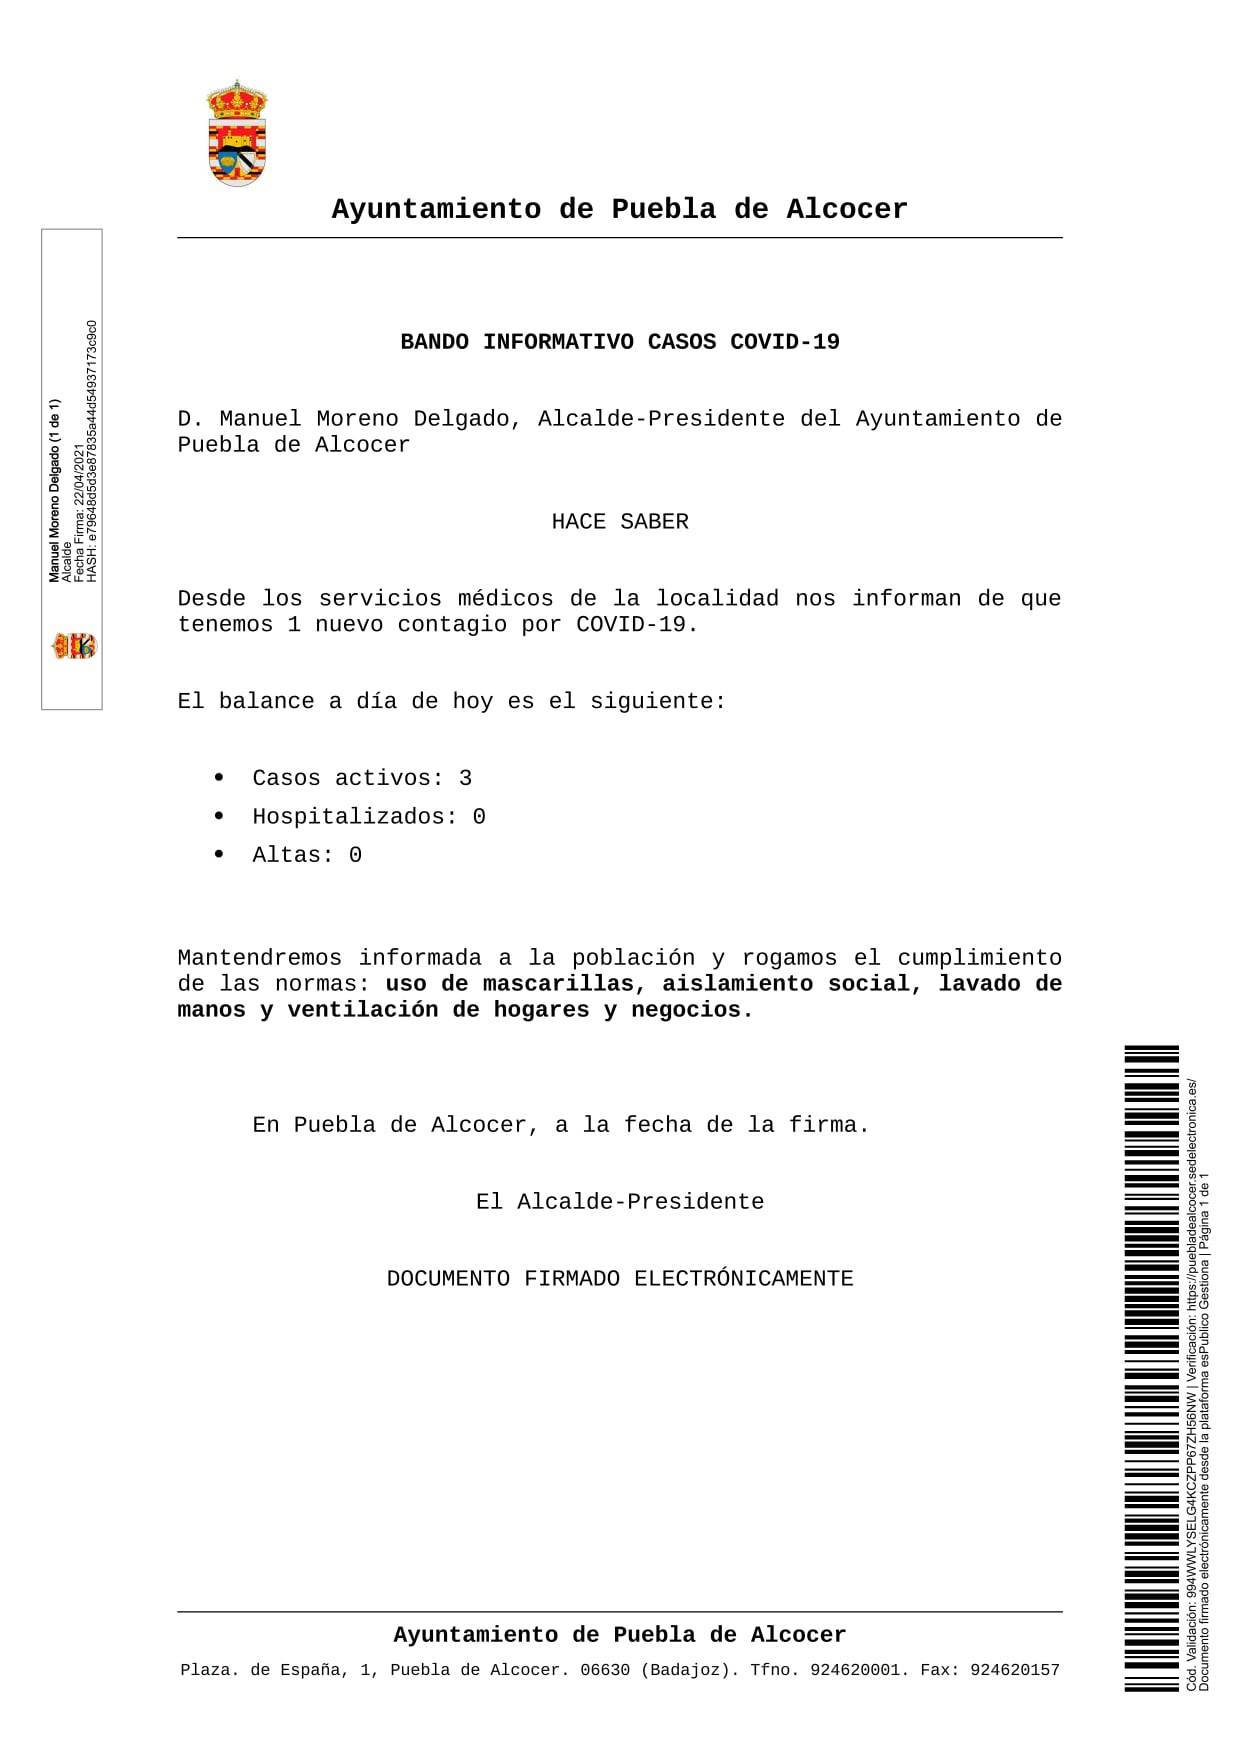 3 casos positivos activos de COVID-19 (abril 2021) - Puebla de Alcocer (Badajoz)